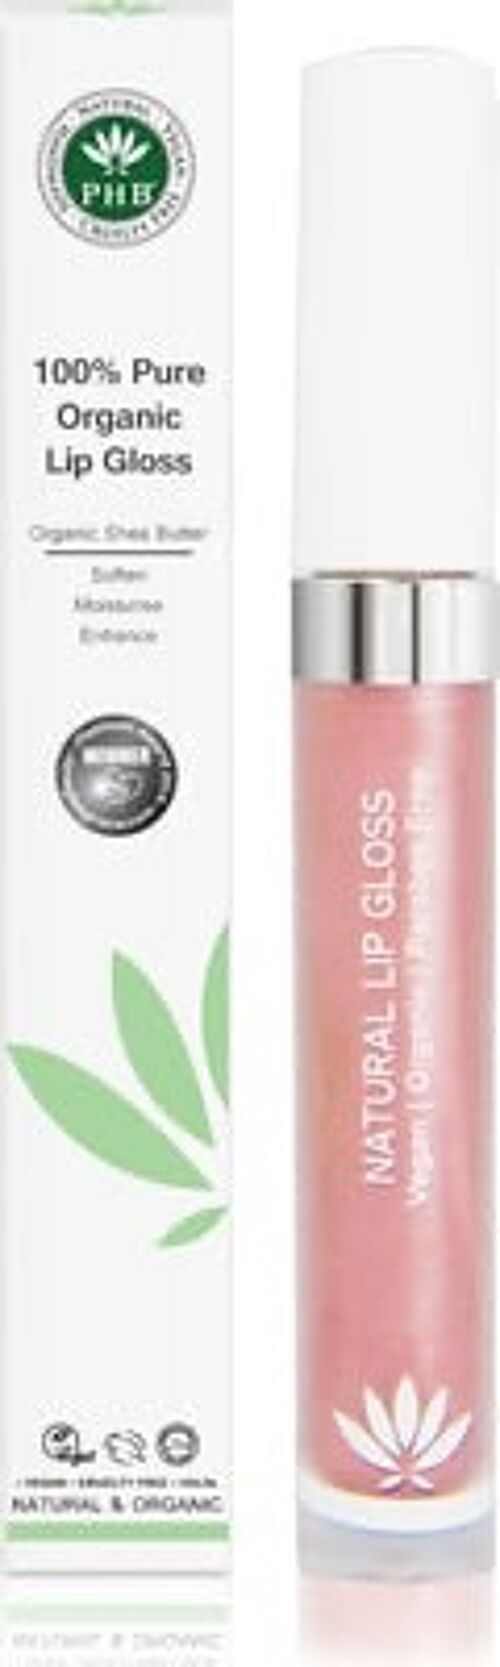 Pure Organic Lip Gloss Grace